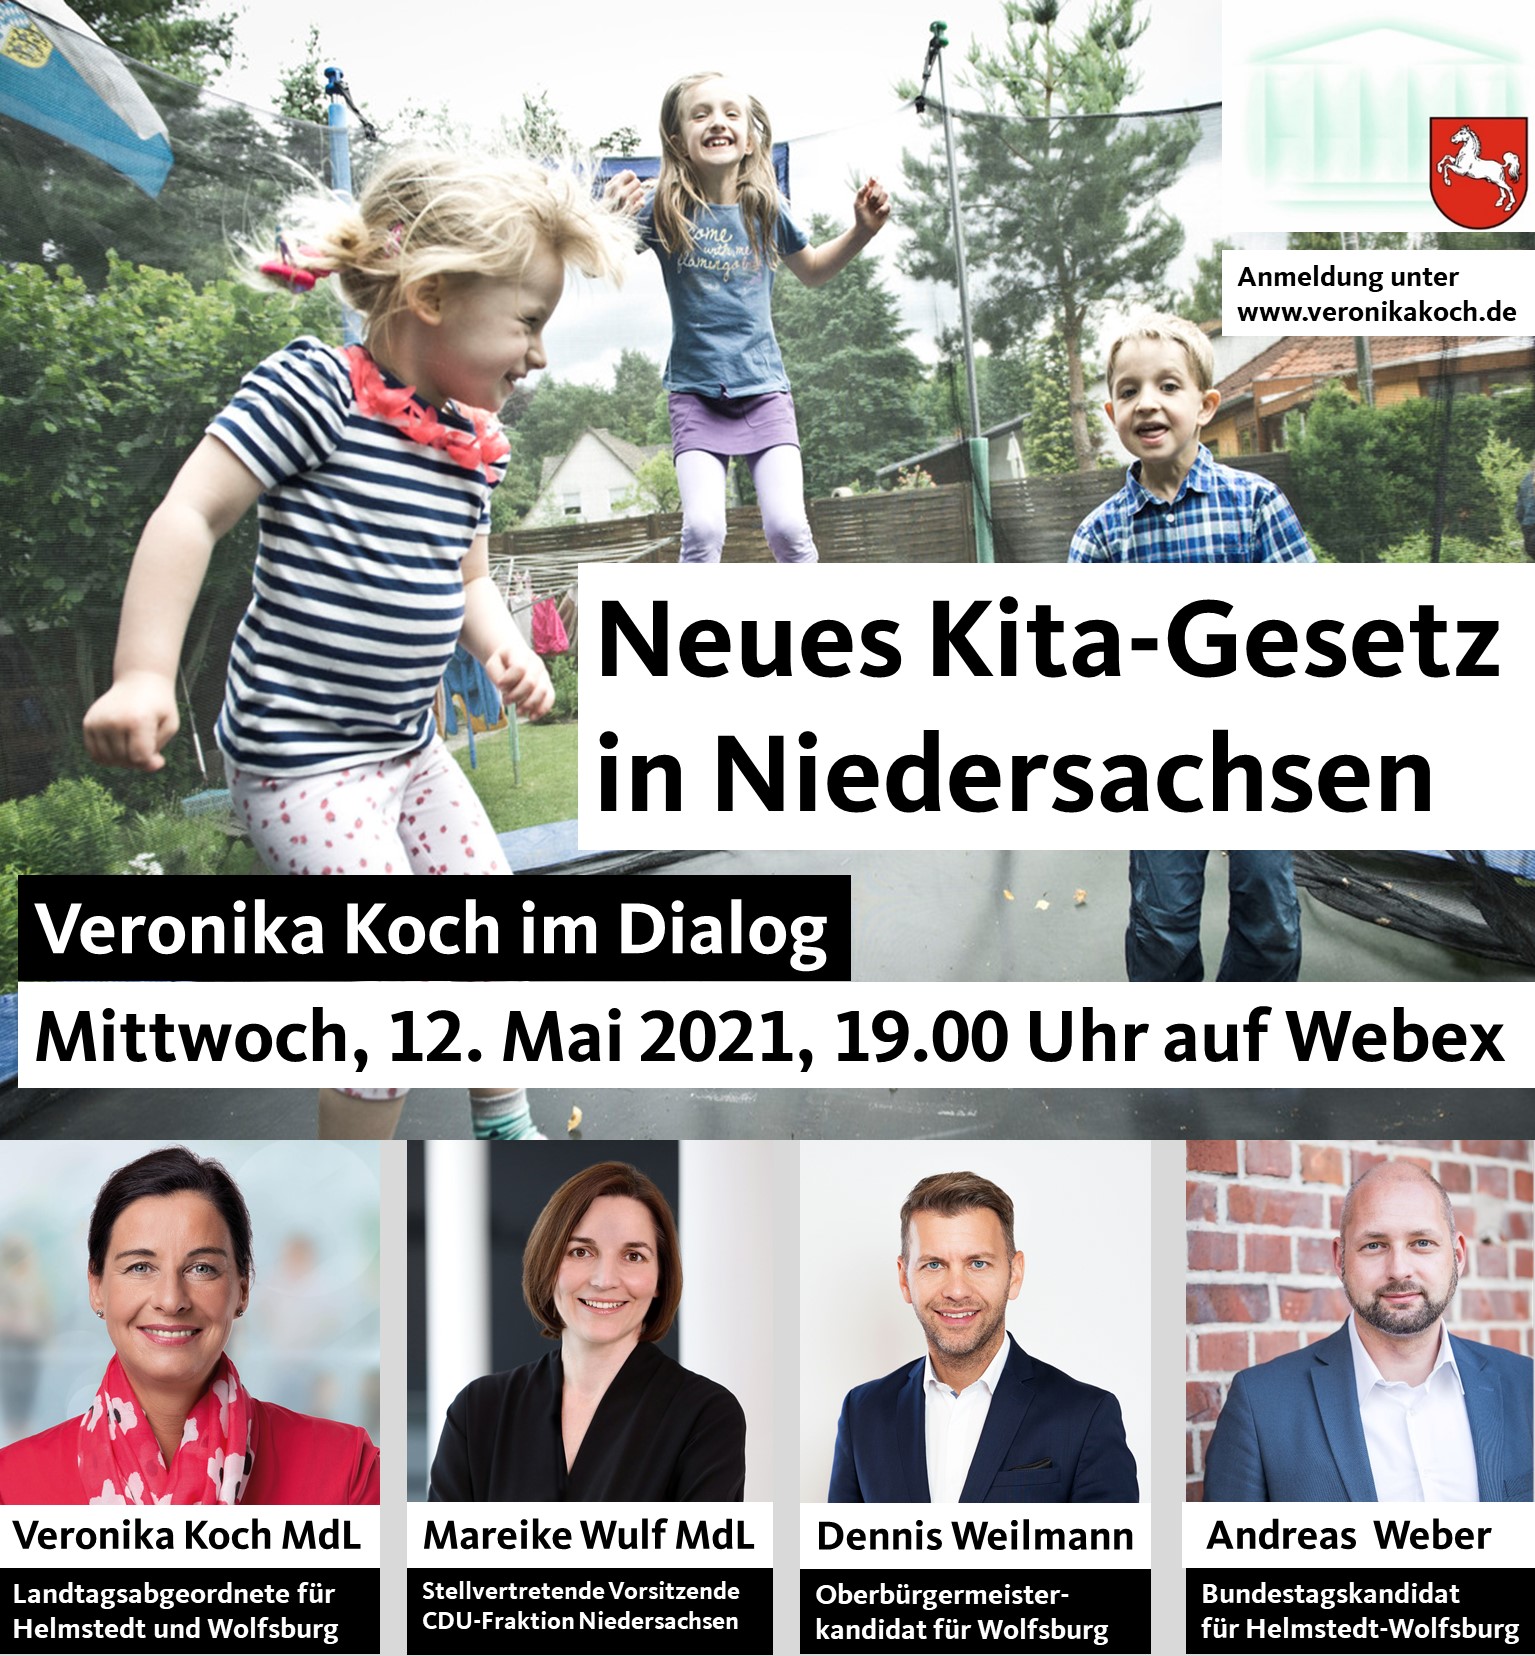 Veronika Koch im Dialog zum neuen Kita-Gesetz in Niedersachsen am 12.05.2021